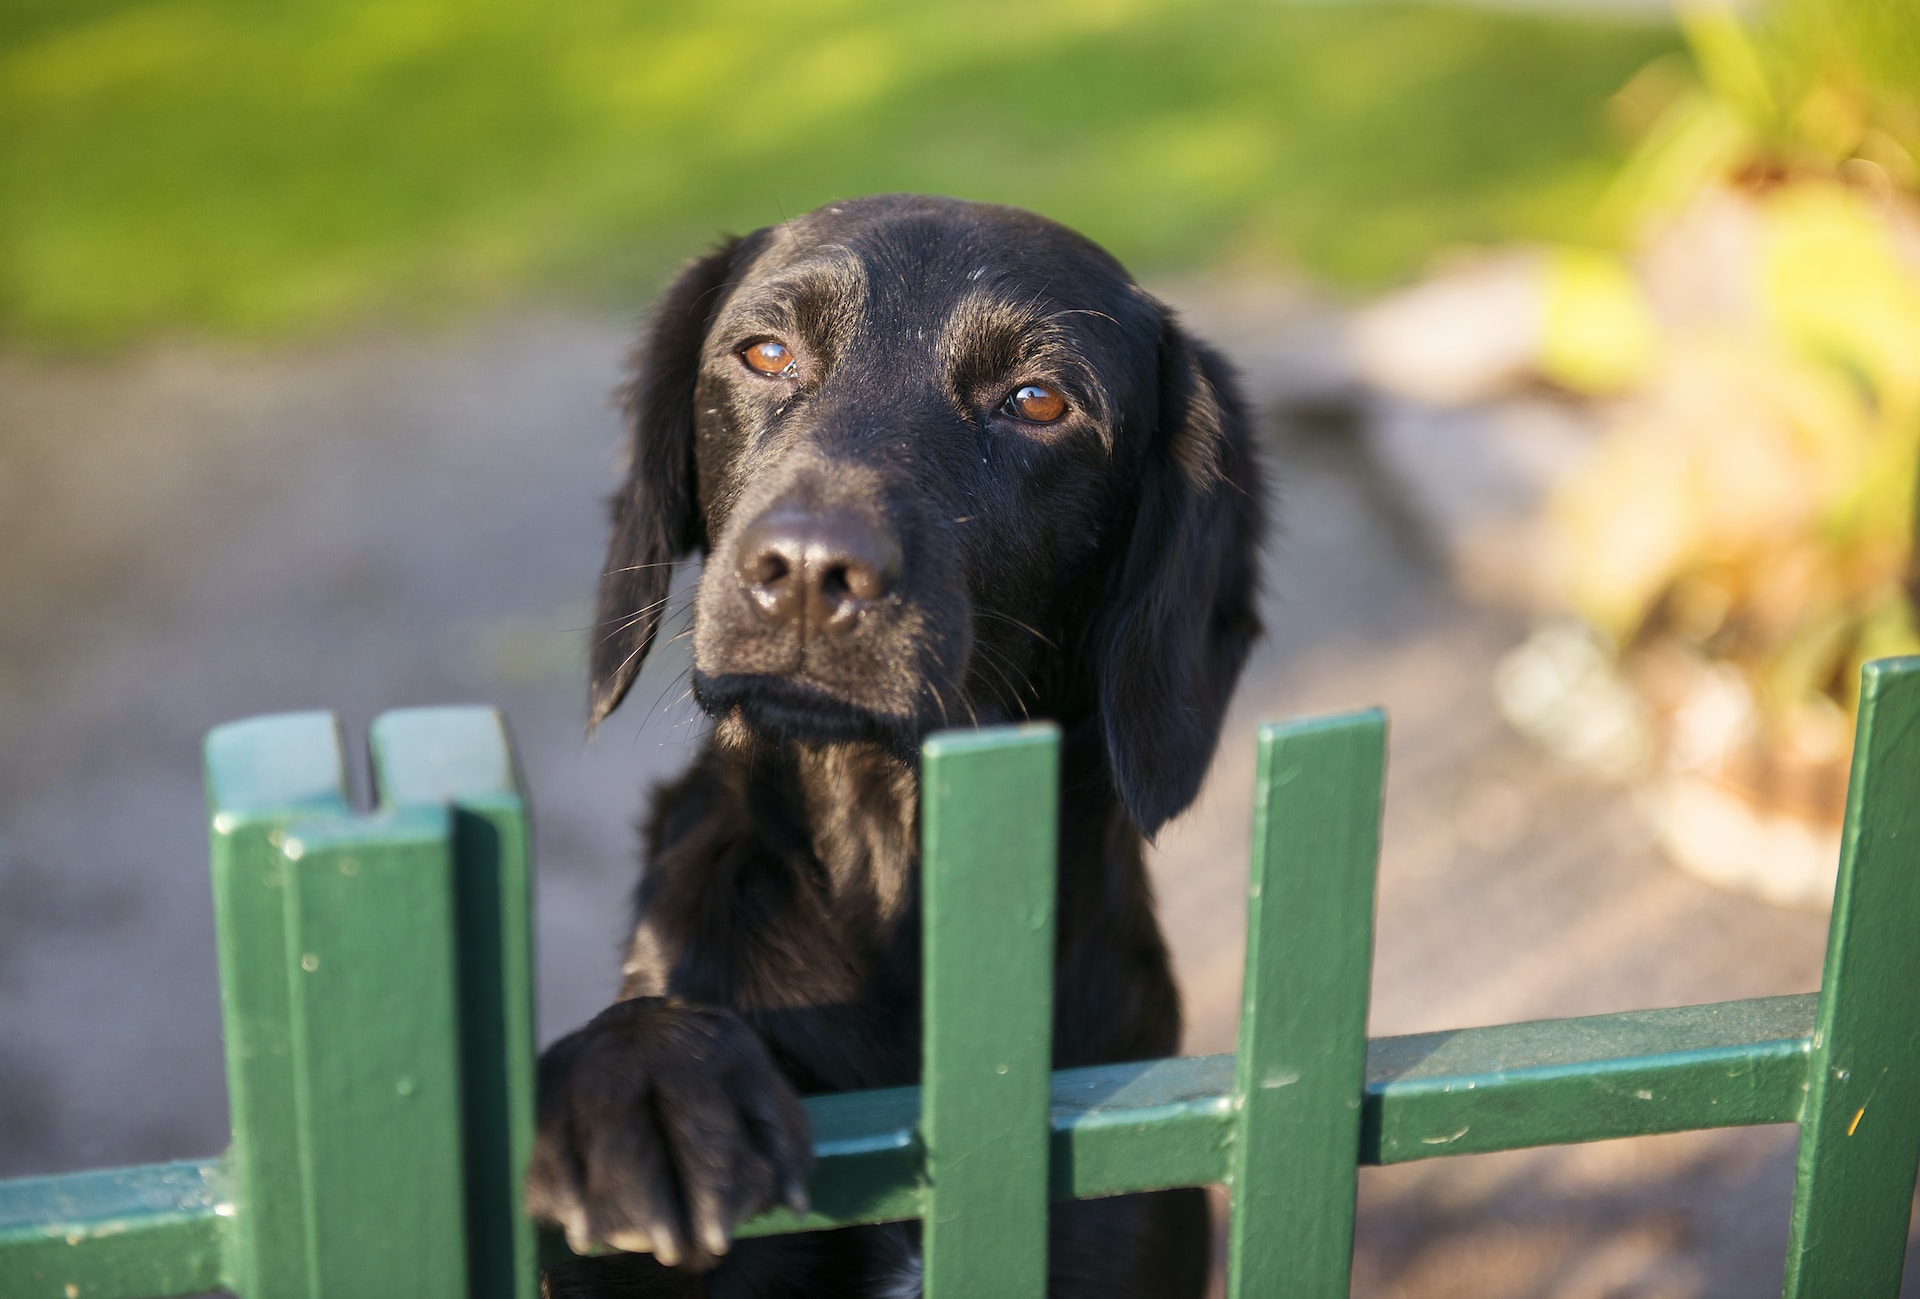 Modern Wrought Iron Dog Fences Pet Fence with Dog Door Large Dog